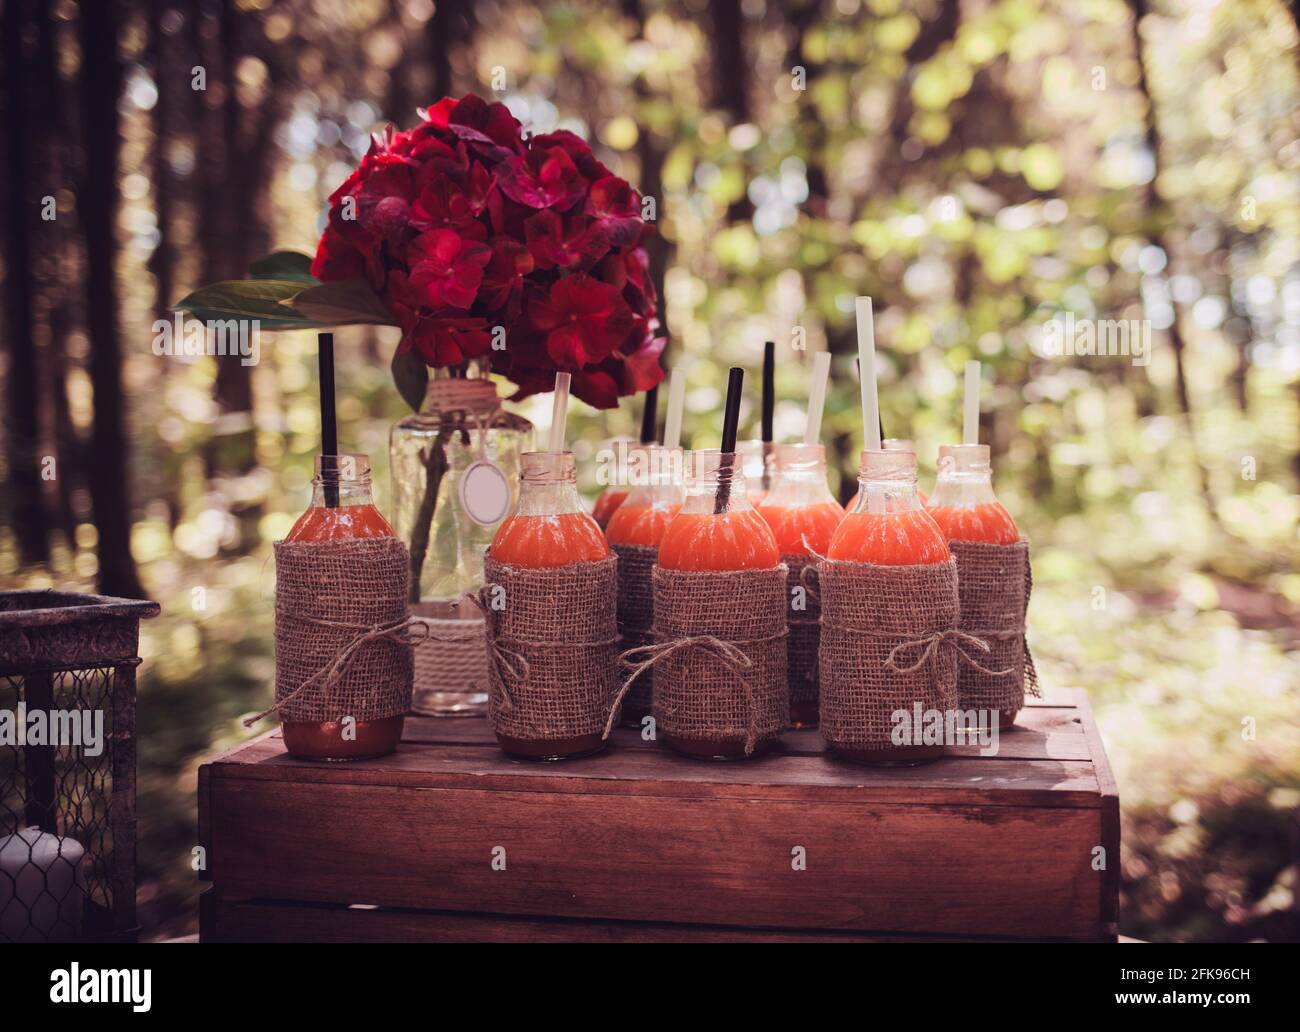 Flaschen Saft und rote Blumen auf dem rustikalen Tisch. Vintage Sommer  Hochzeit Tischdekoration Stockfotografie - Alamy